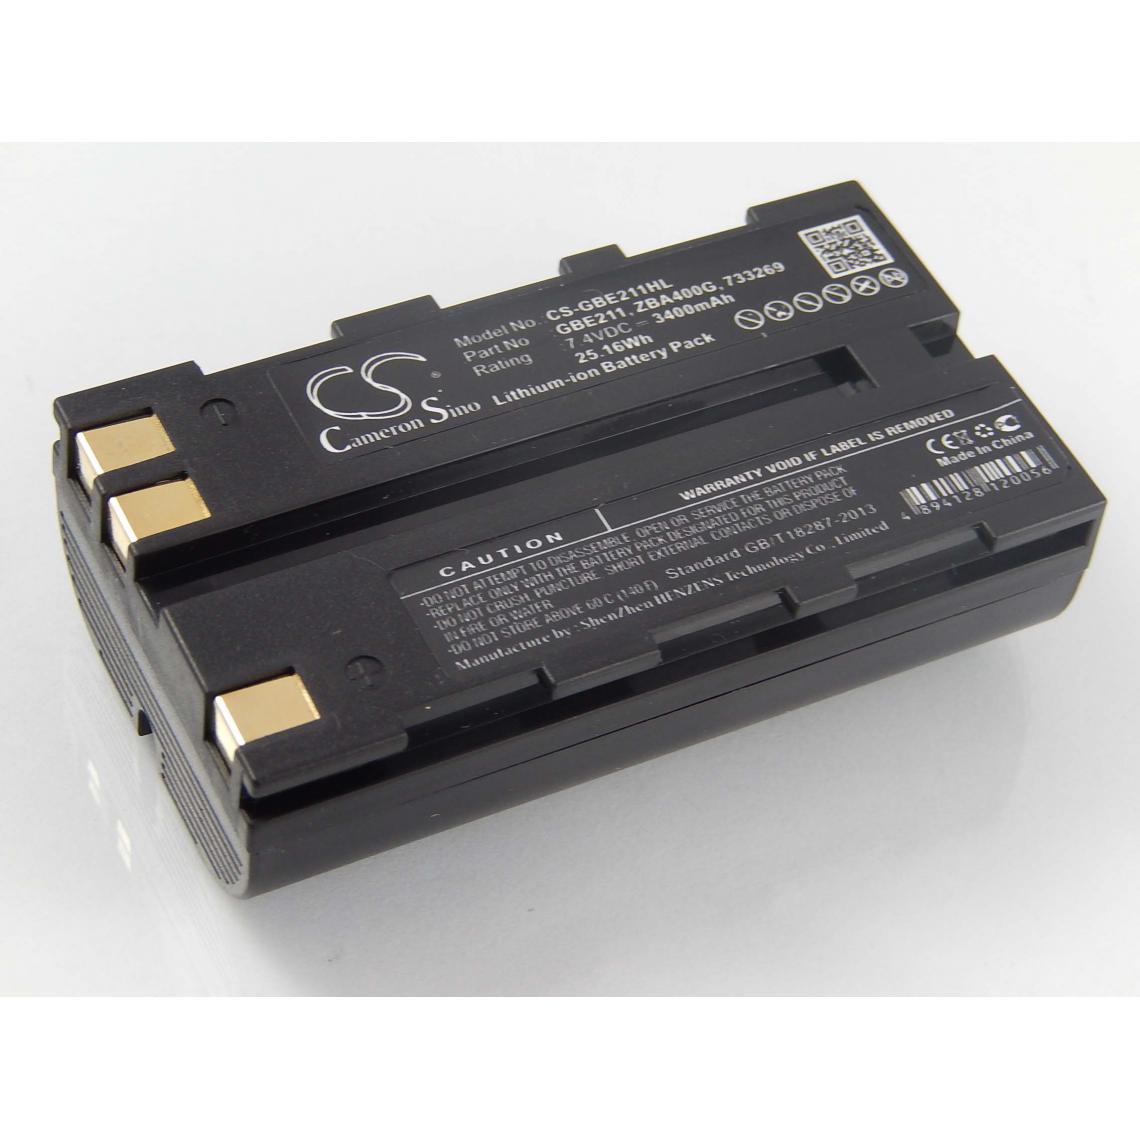 Vhbw - vhbw Batterie compatible avec Leica SR530 GPS, Stonex R6+ dispositif de mesure laser, outil de mesure (3400mAh, 7,4V, Li-ion) - Piles rechargeables